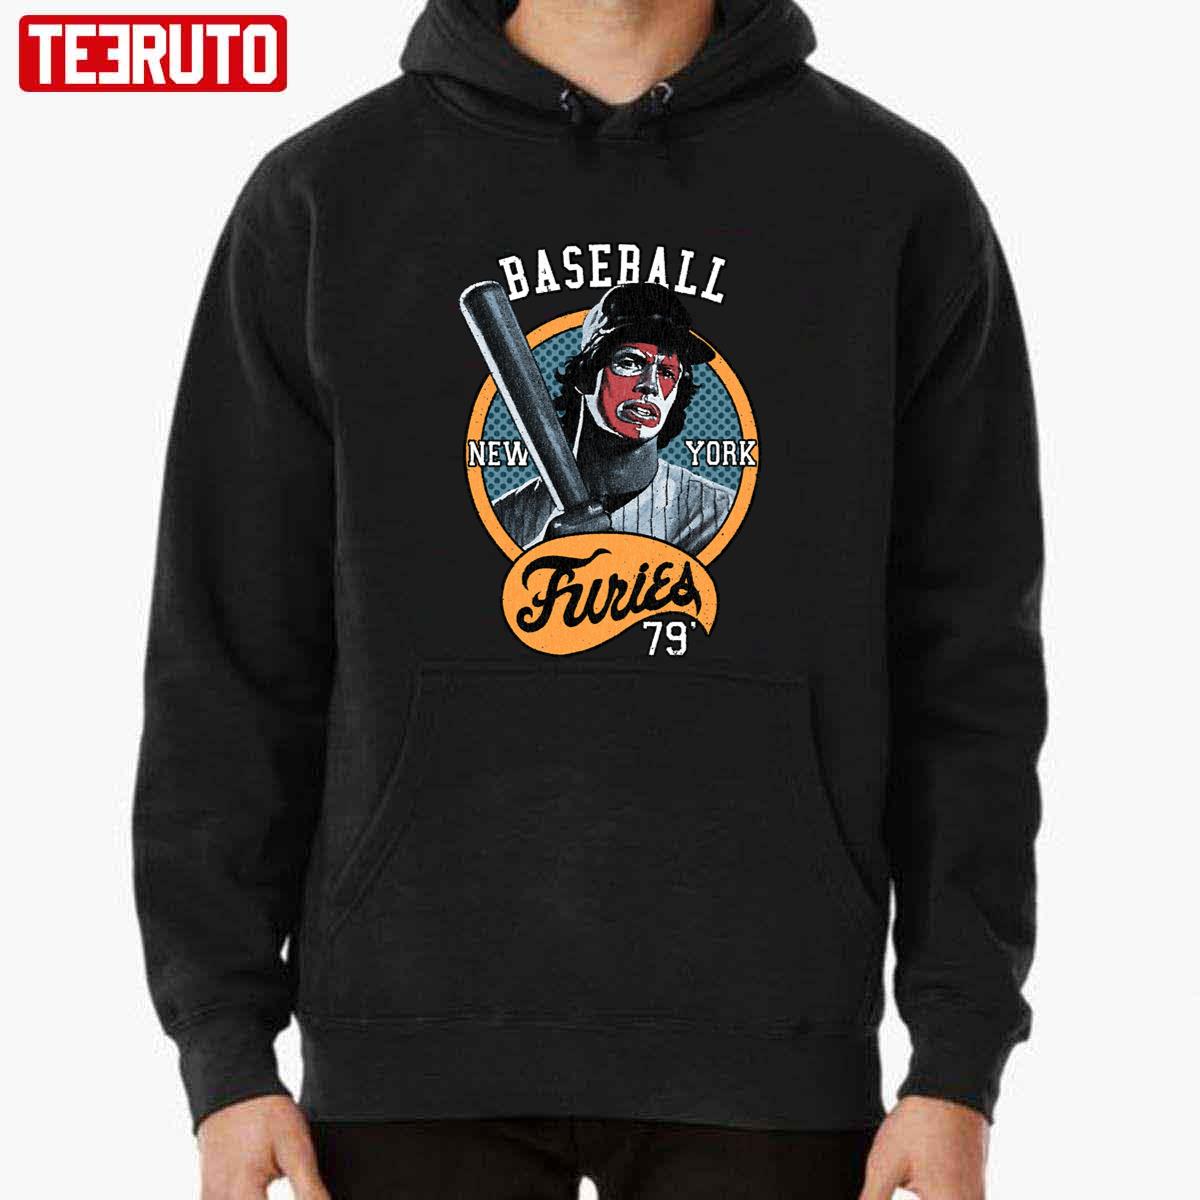 New York Baseball Furies 79 The Warriors Unisex T-shirt - Teeruto